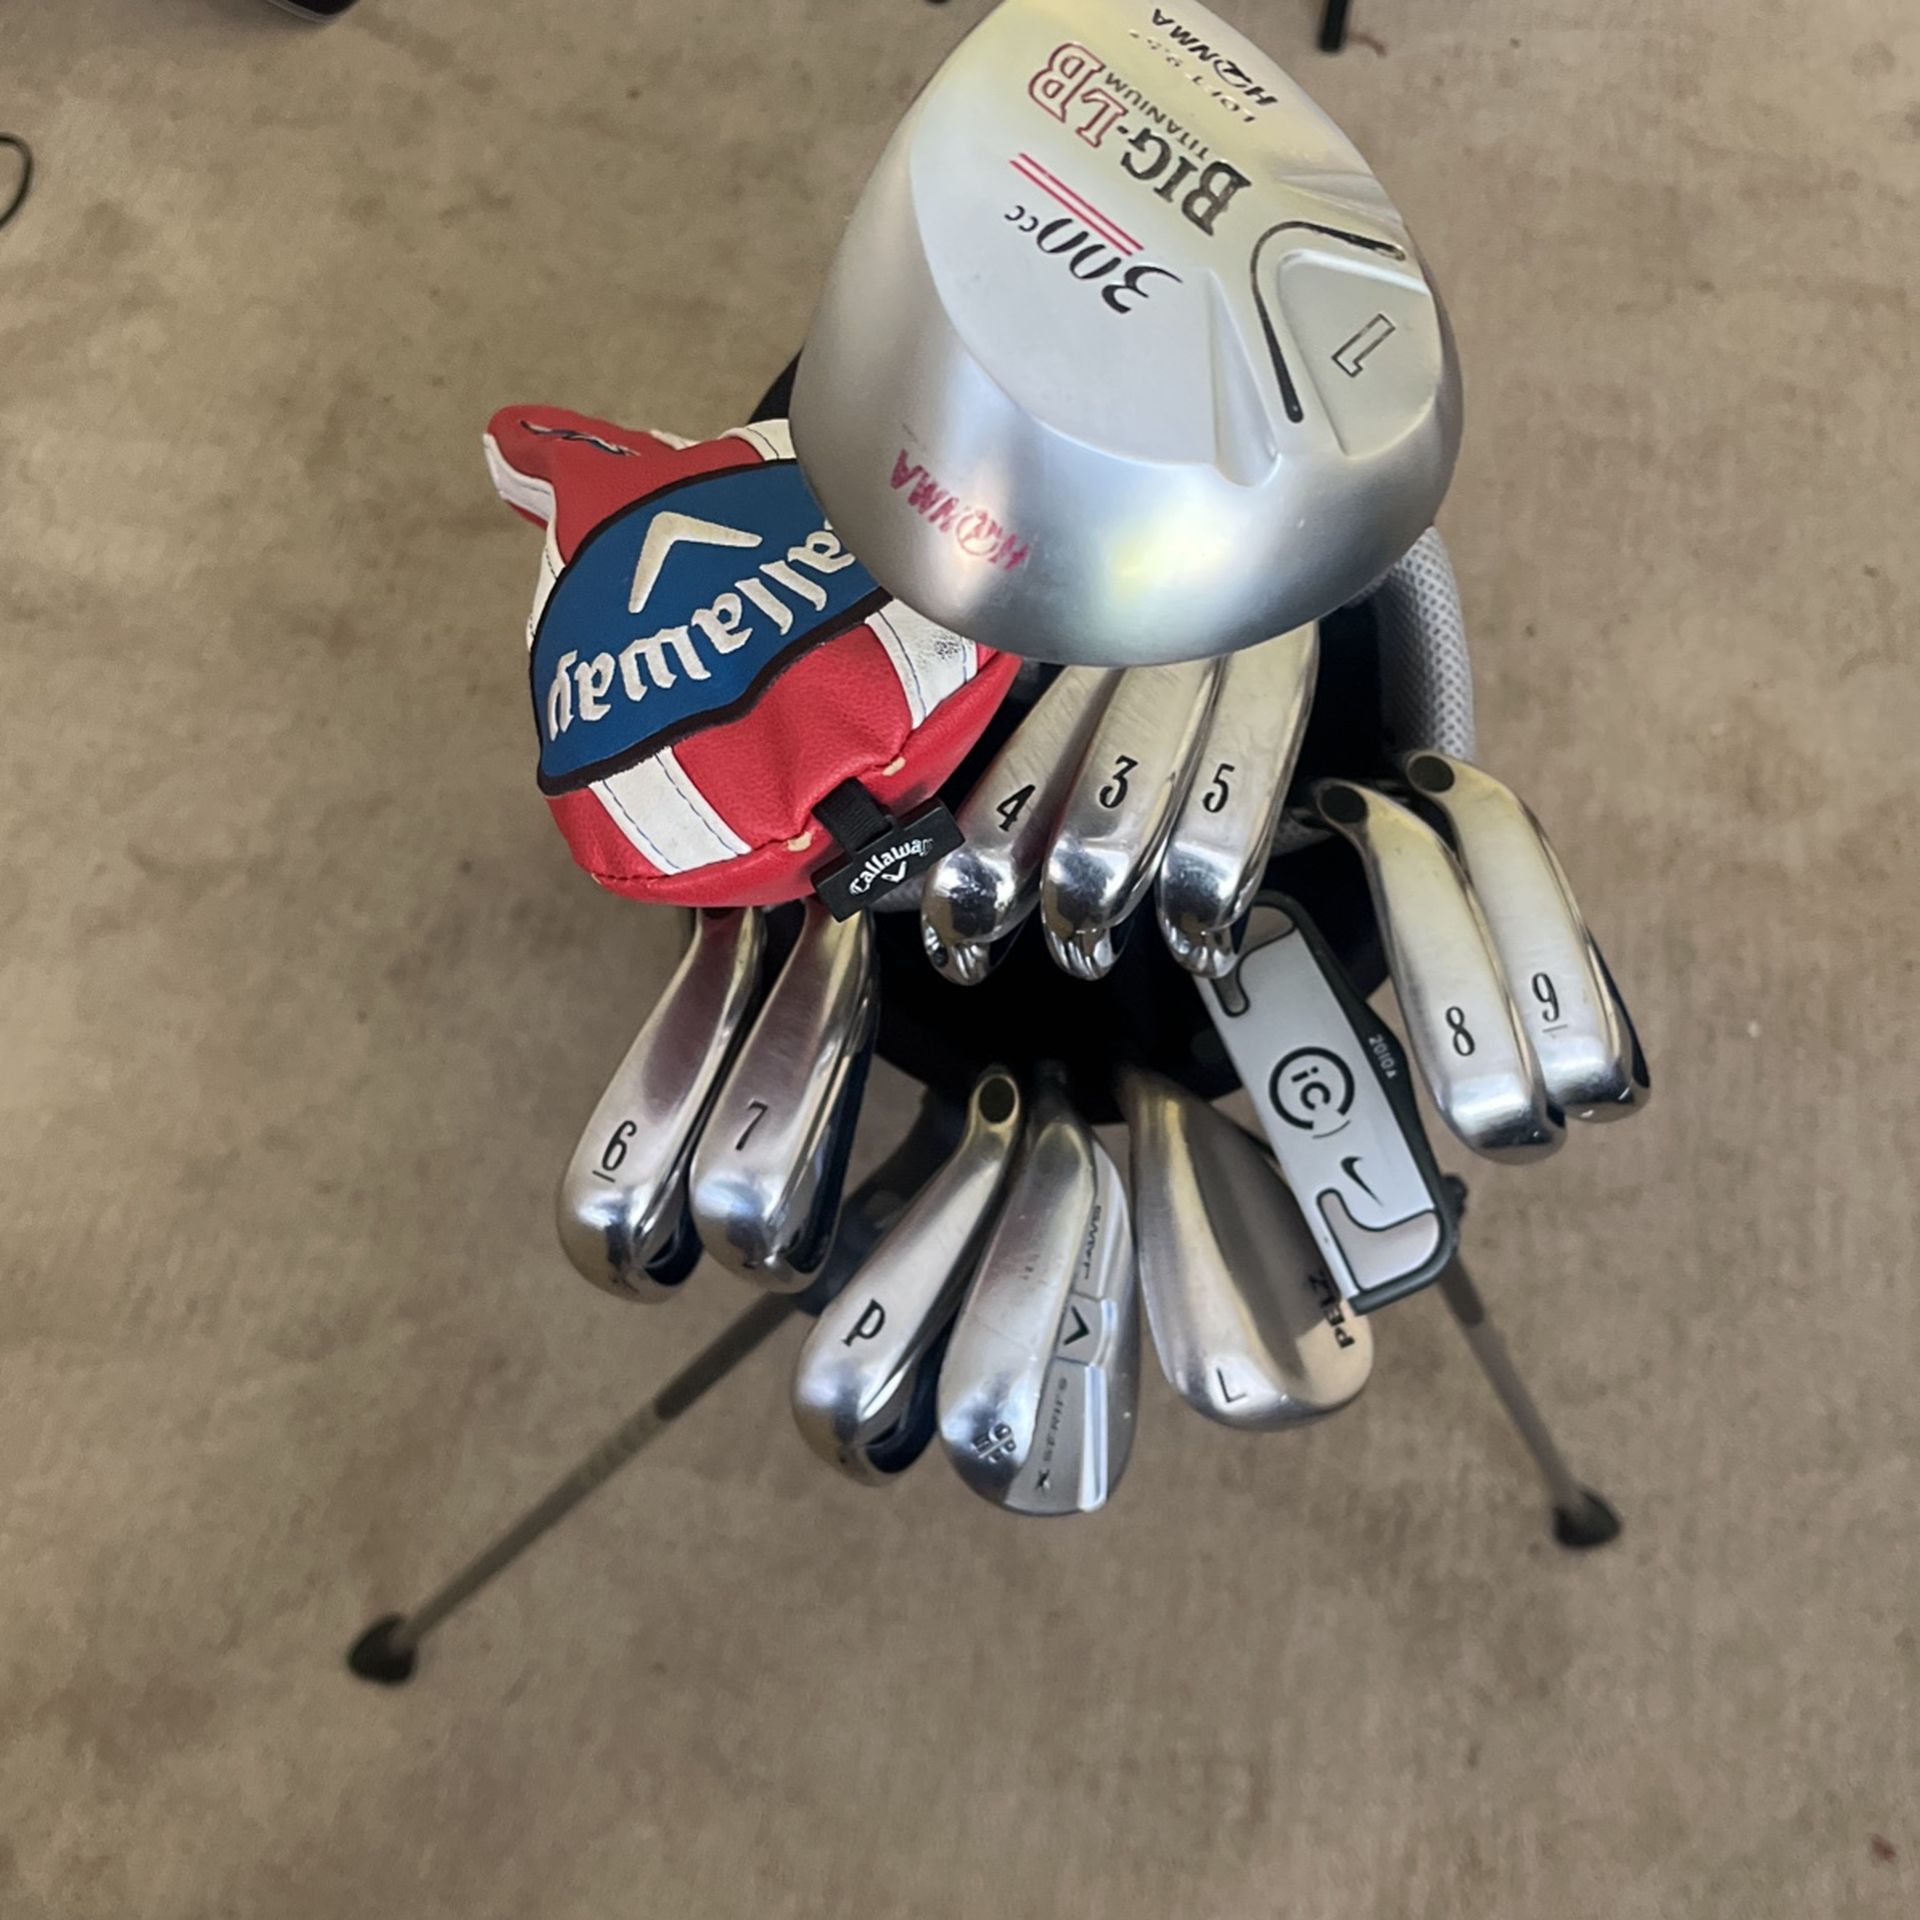 Golf Clubs And Bag Setup